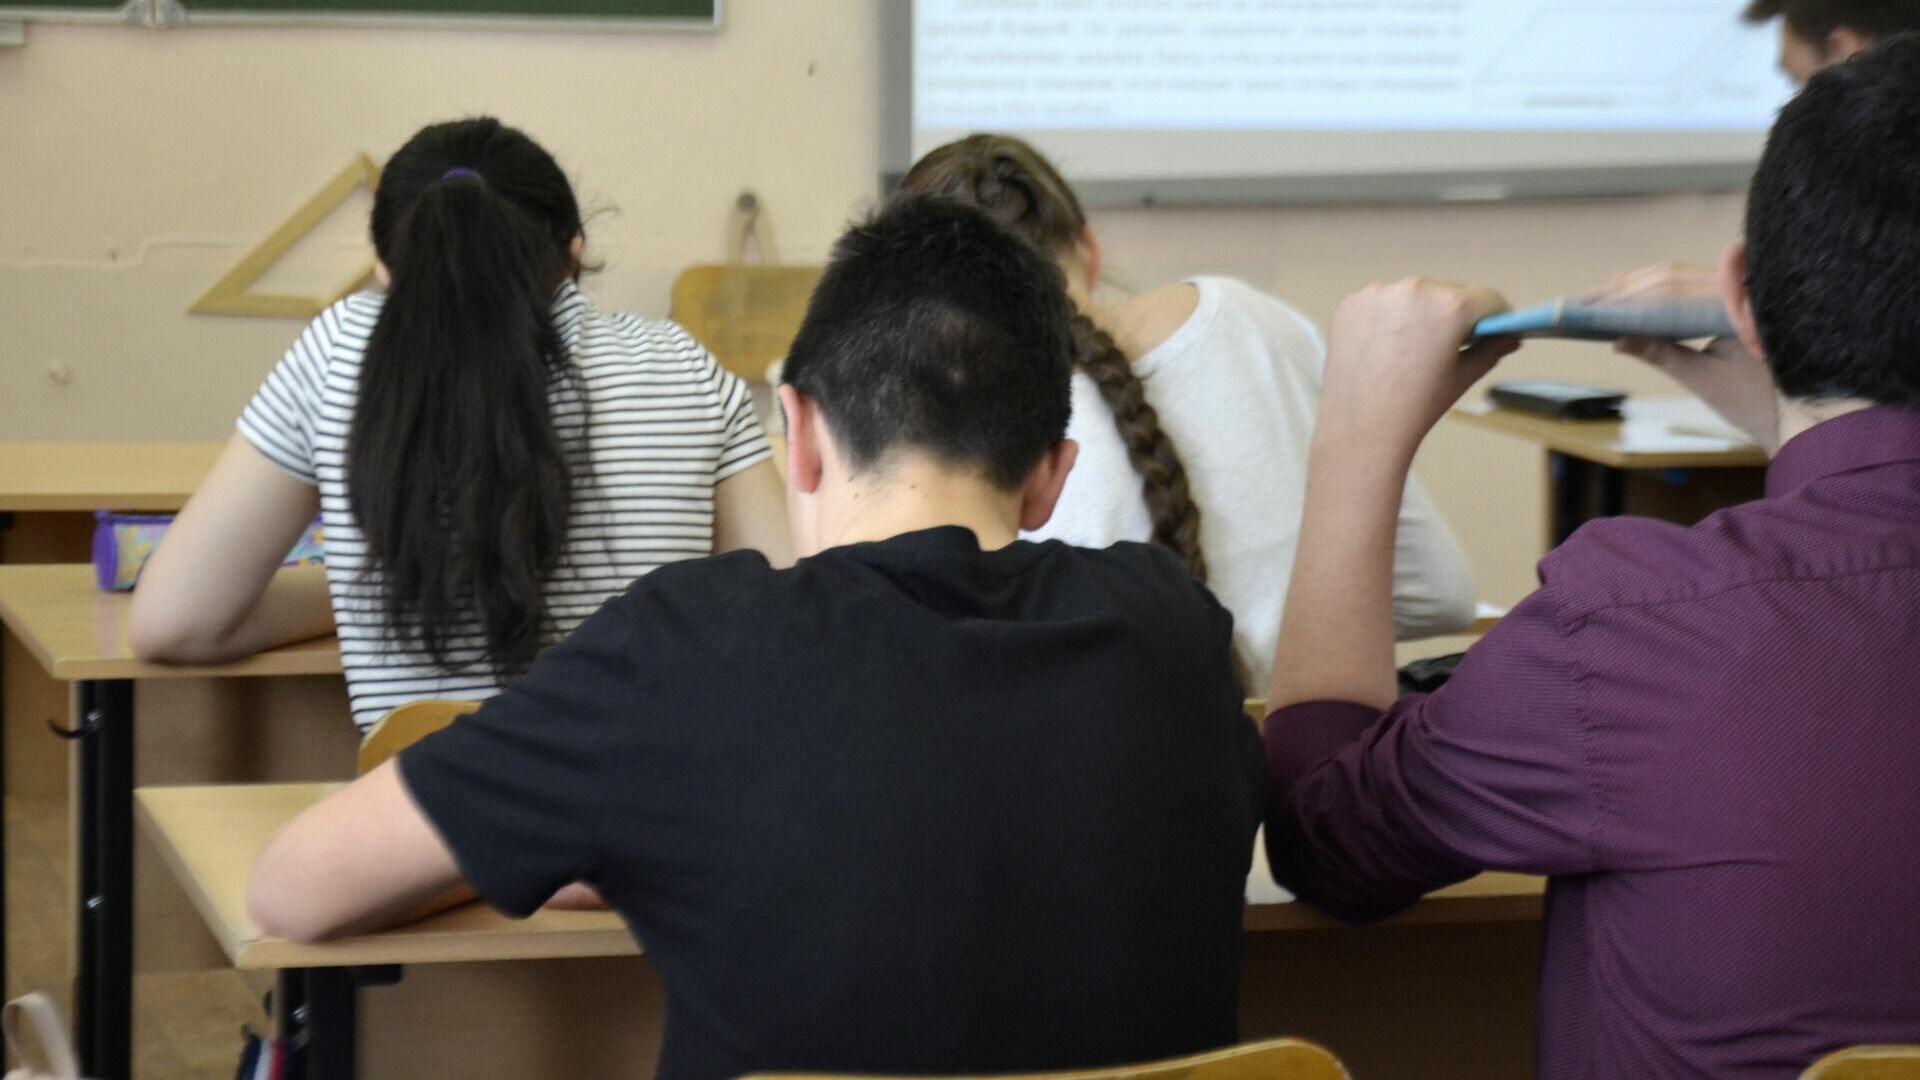 Закон о запрете съемки на школьных уроках готовят в Госдуме